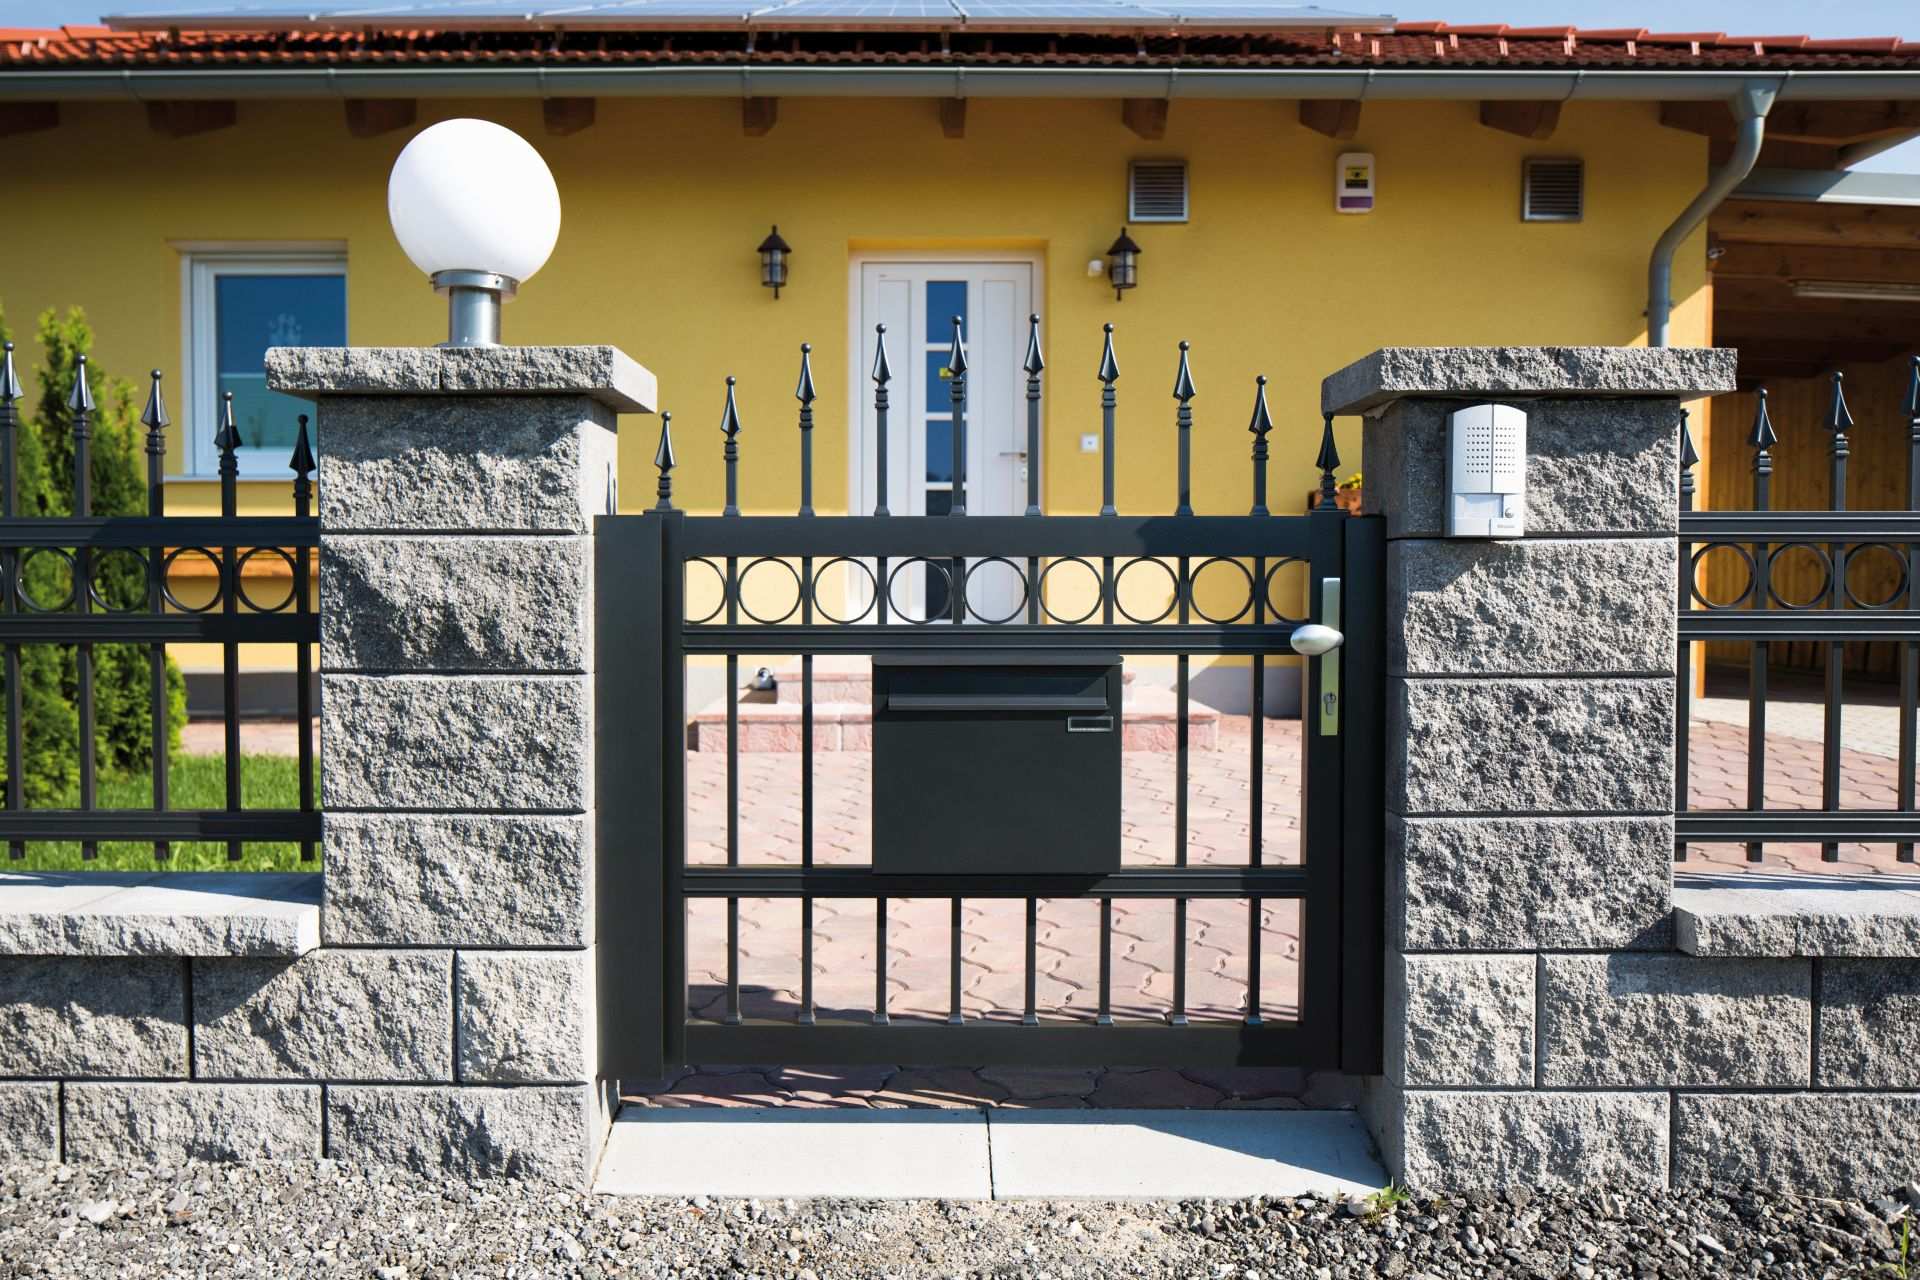 Gartentüre konvex in anthrazit mit Dekorringen und Lanze, mit passendem Briefkasten, Modell Venezia, vor gelbem Haus in Steinmauer integriert